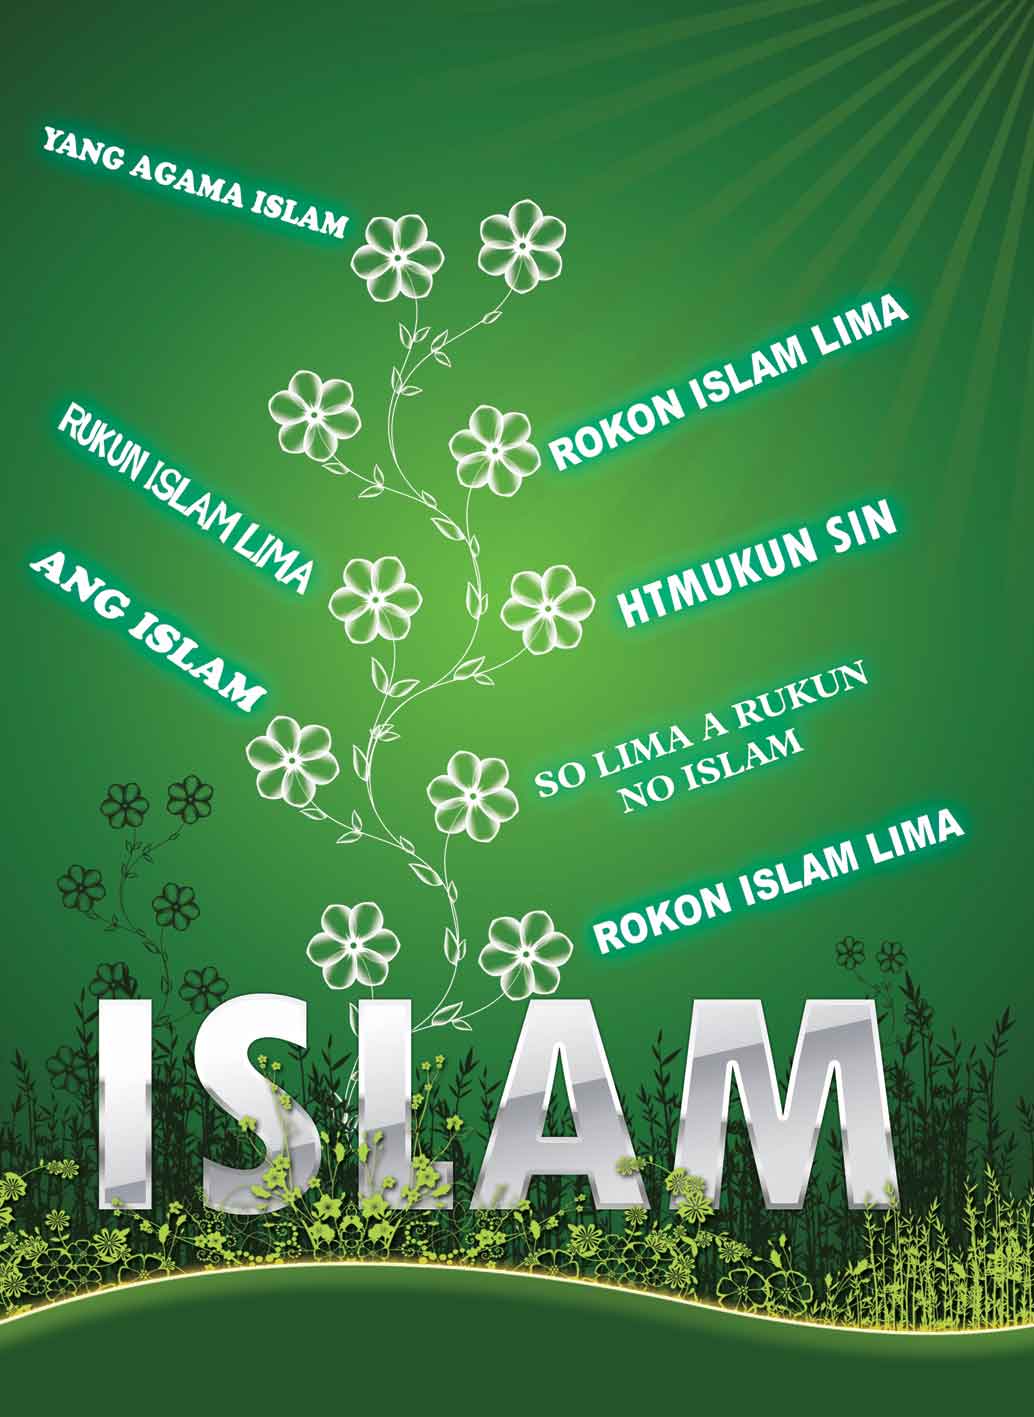 Yang Agama Islam